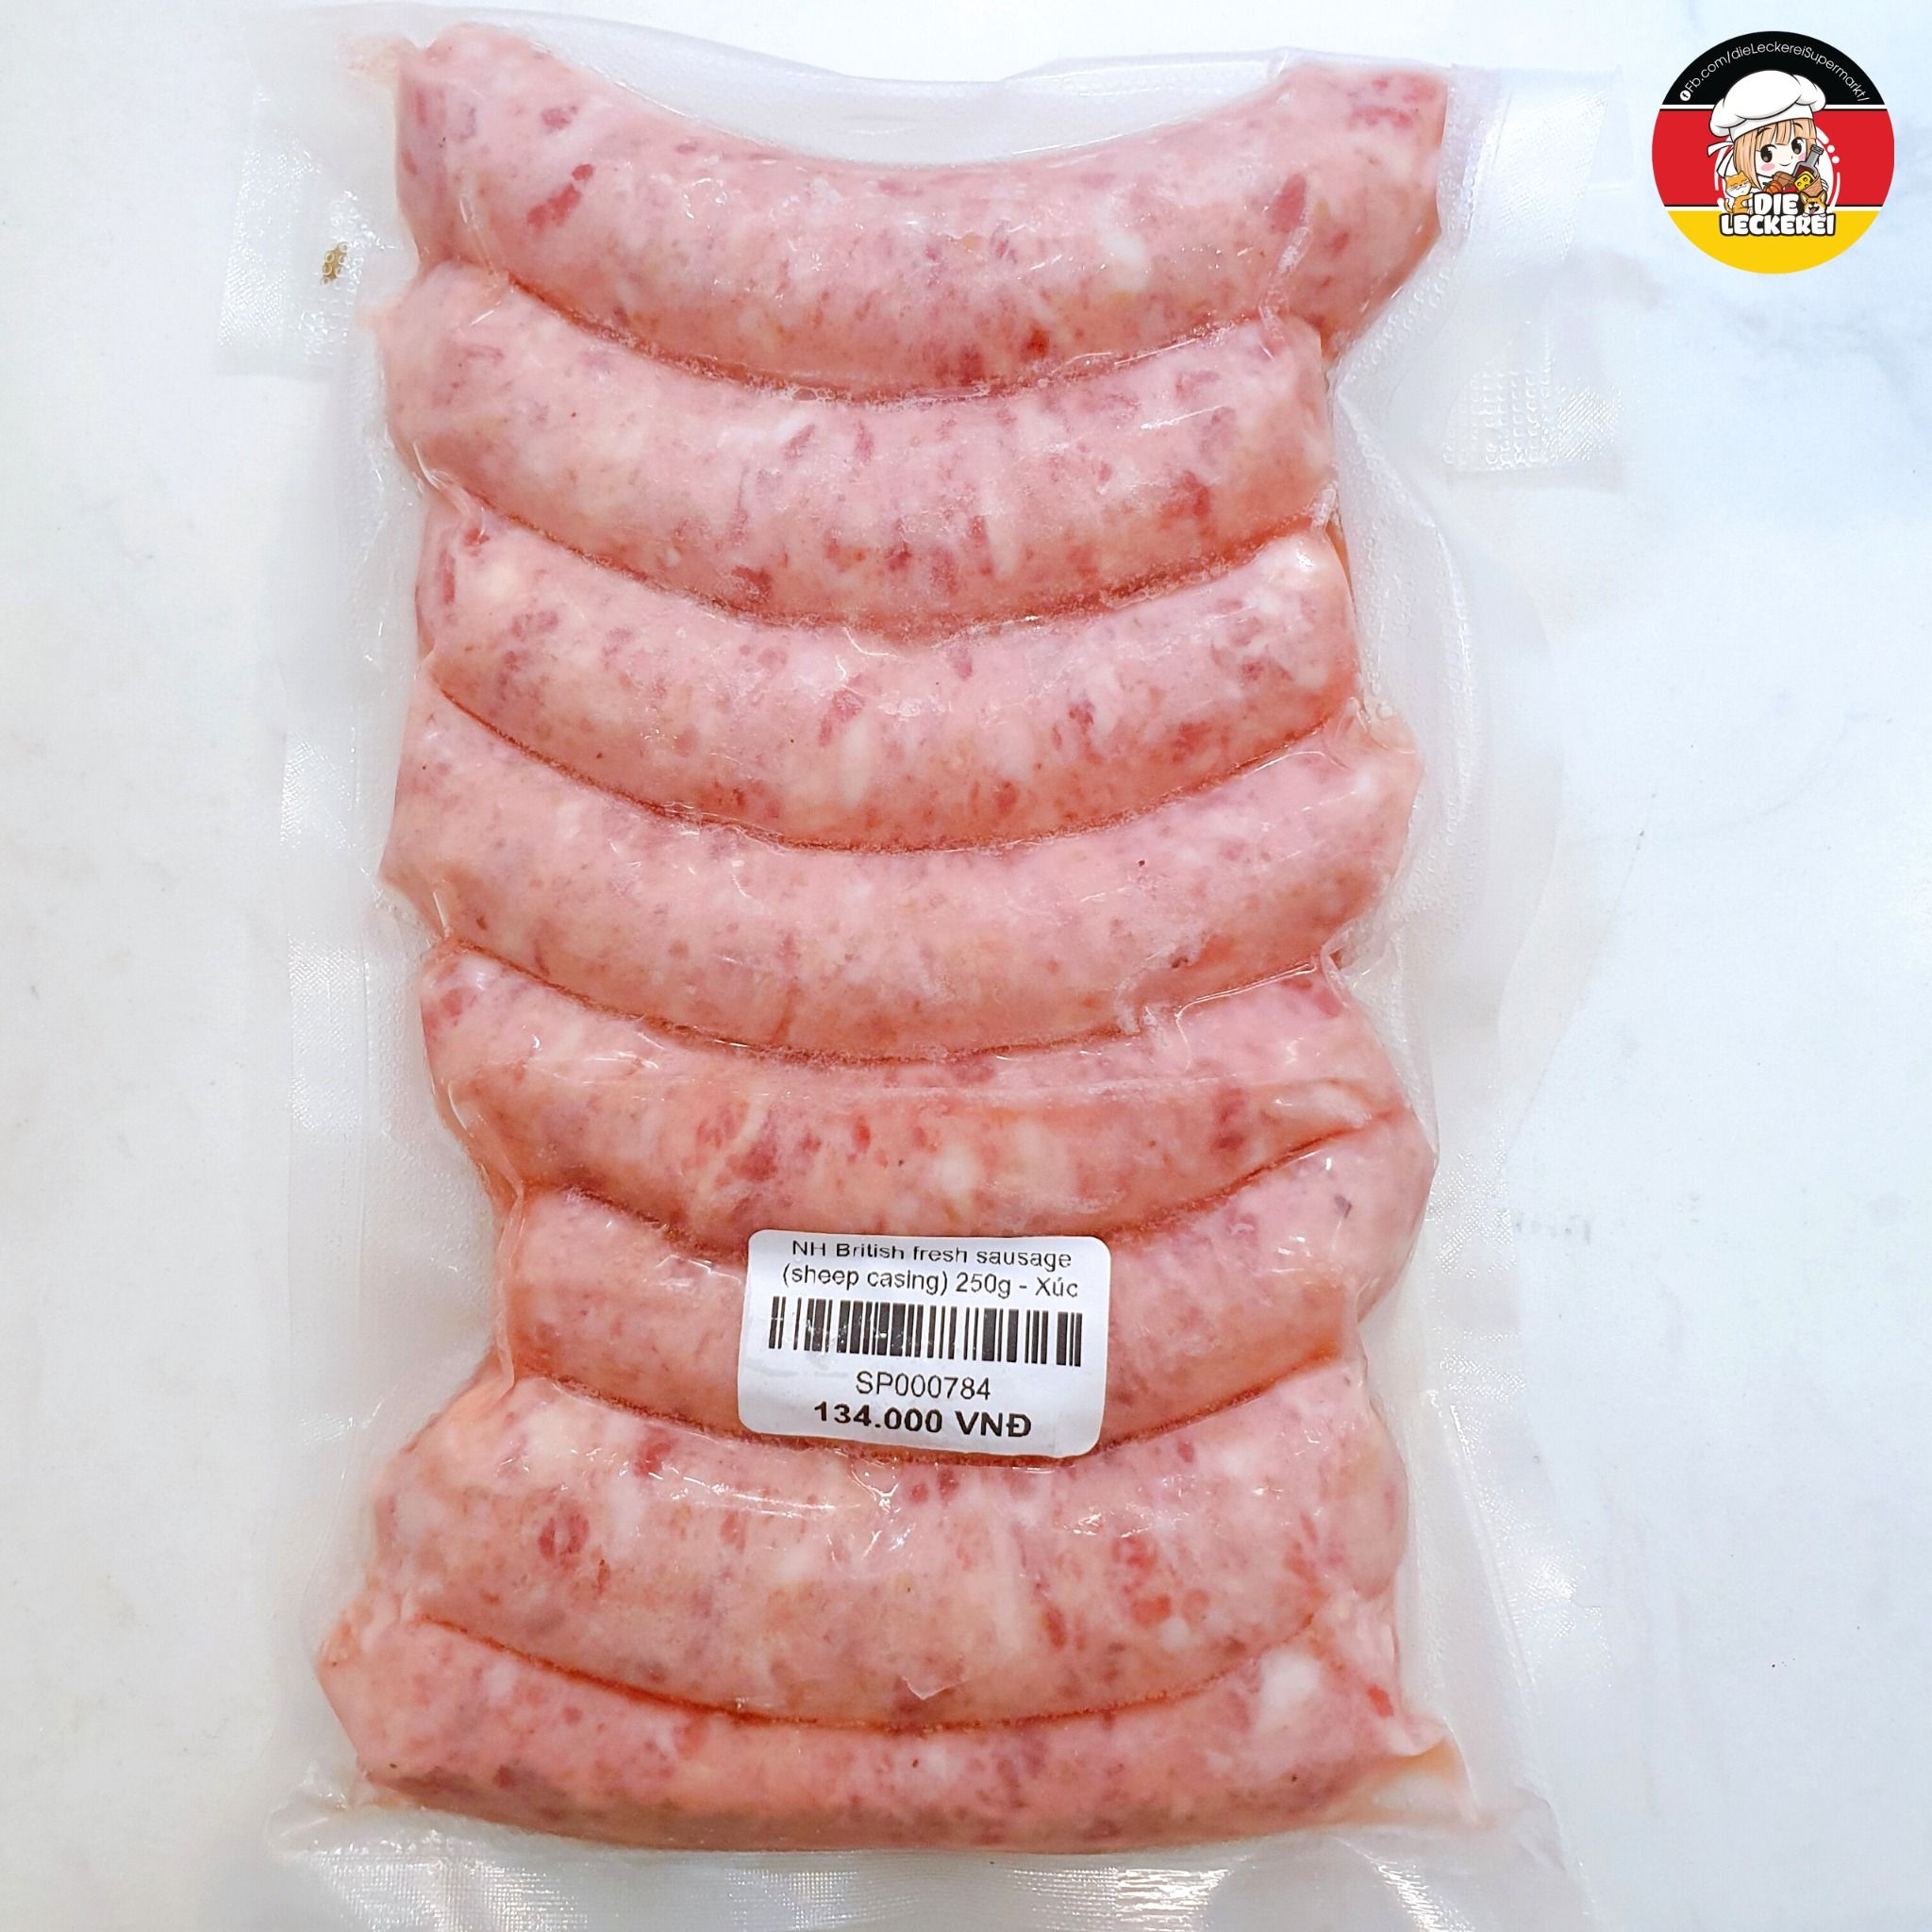  NH British fresh sausage (sheep casing) 250g 7pcs - Xúc xích Anh 